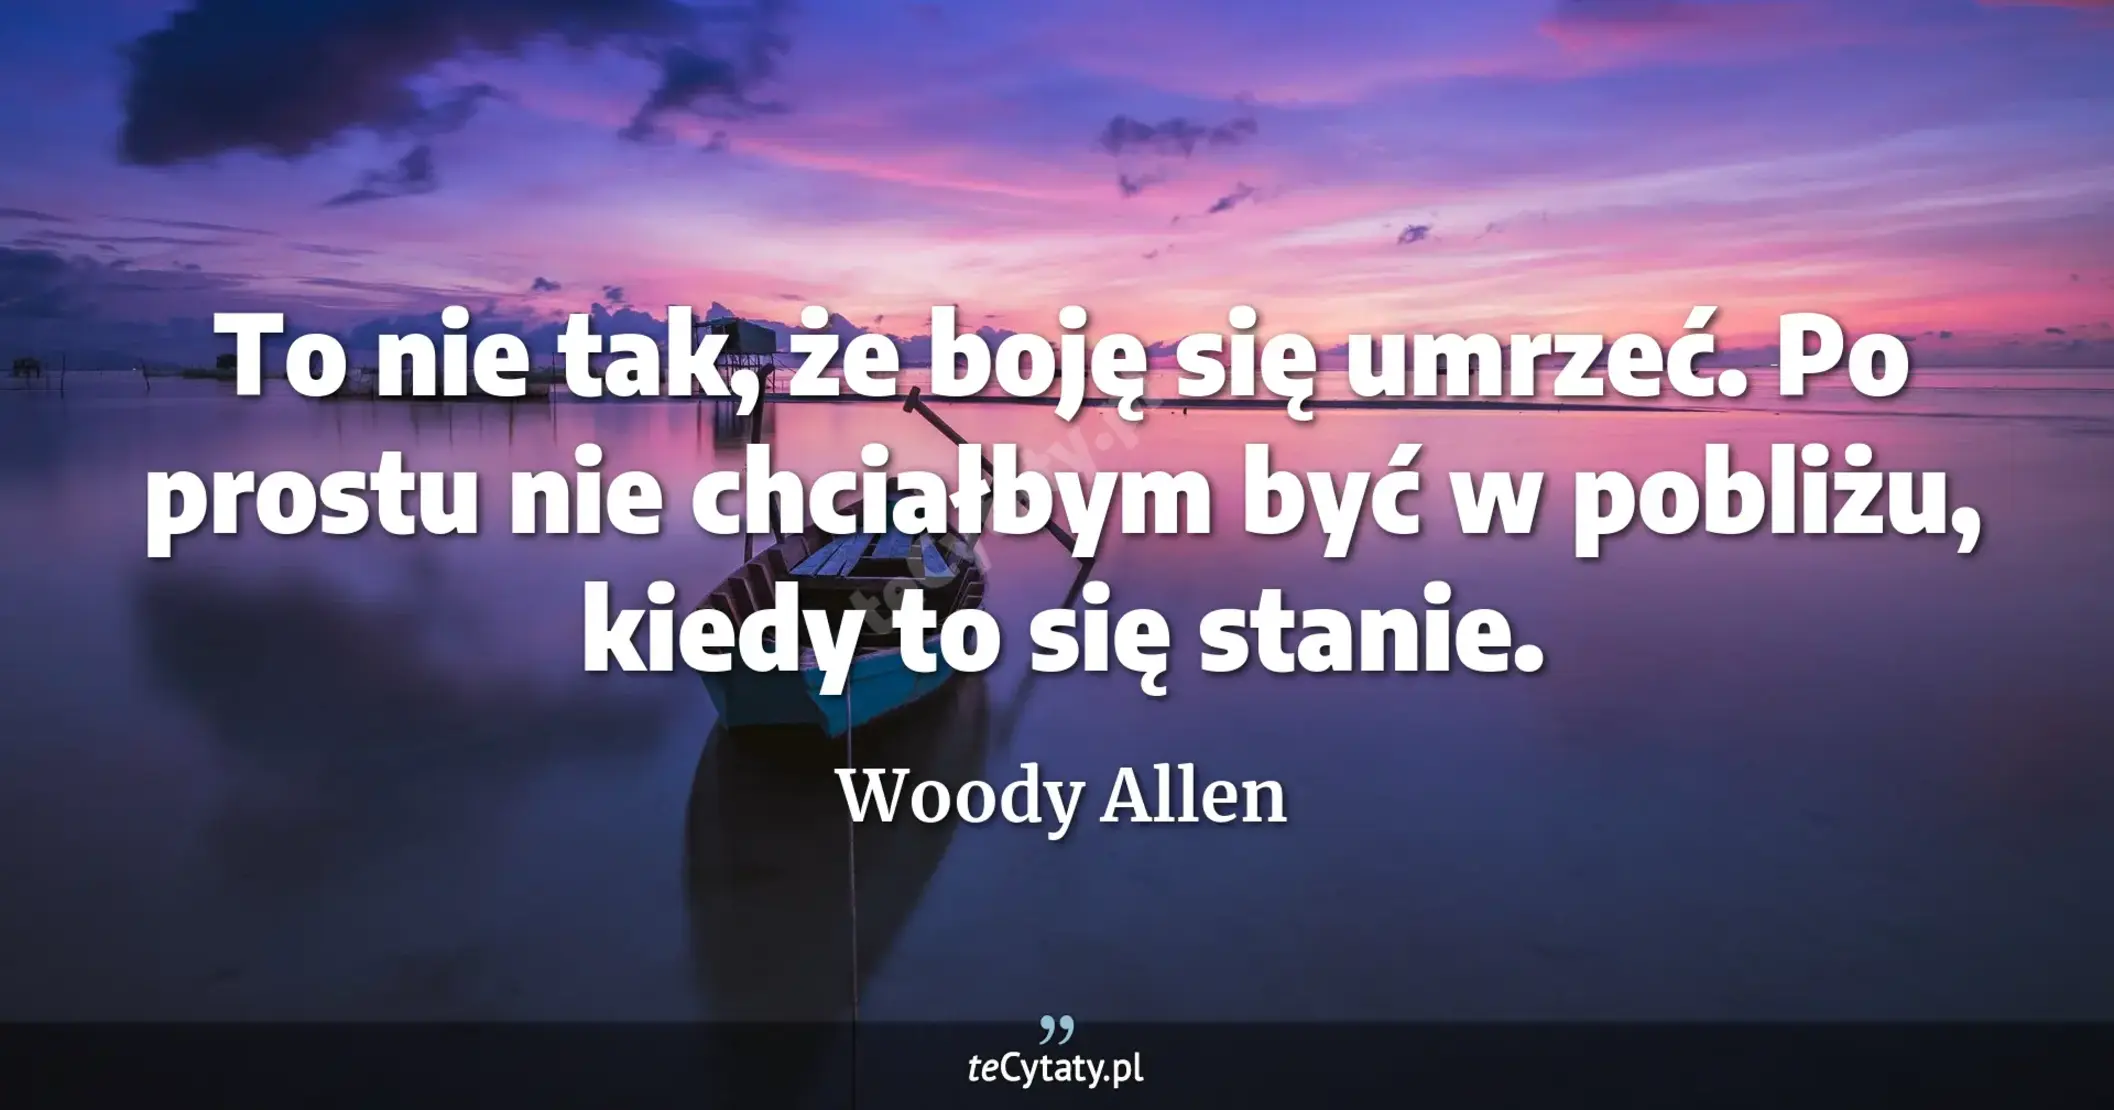 To nie tak, że boję się umrzeć. Po prostu nie chciałbym być w pobliżu, kiedy to się stanie. - Woody Allen